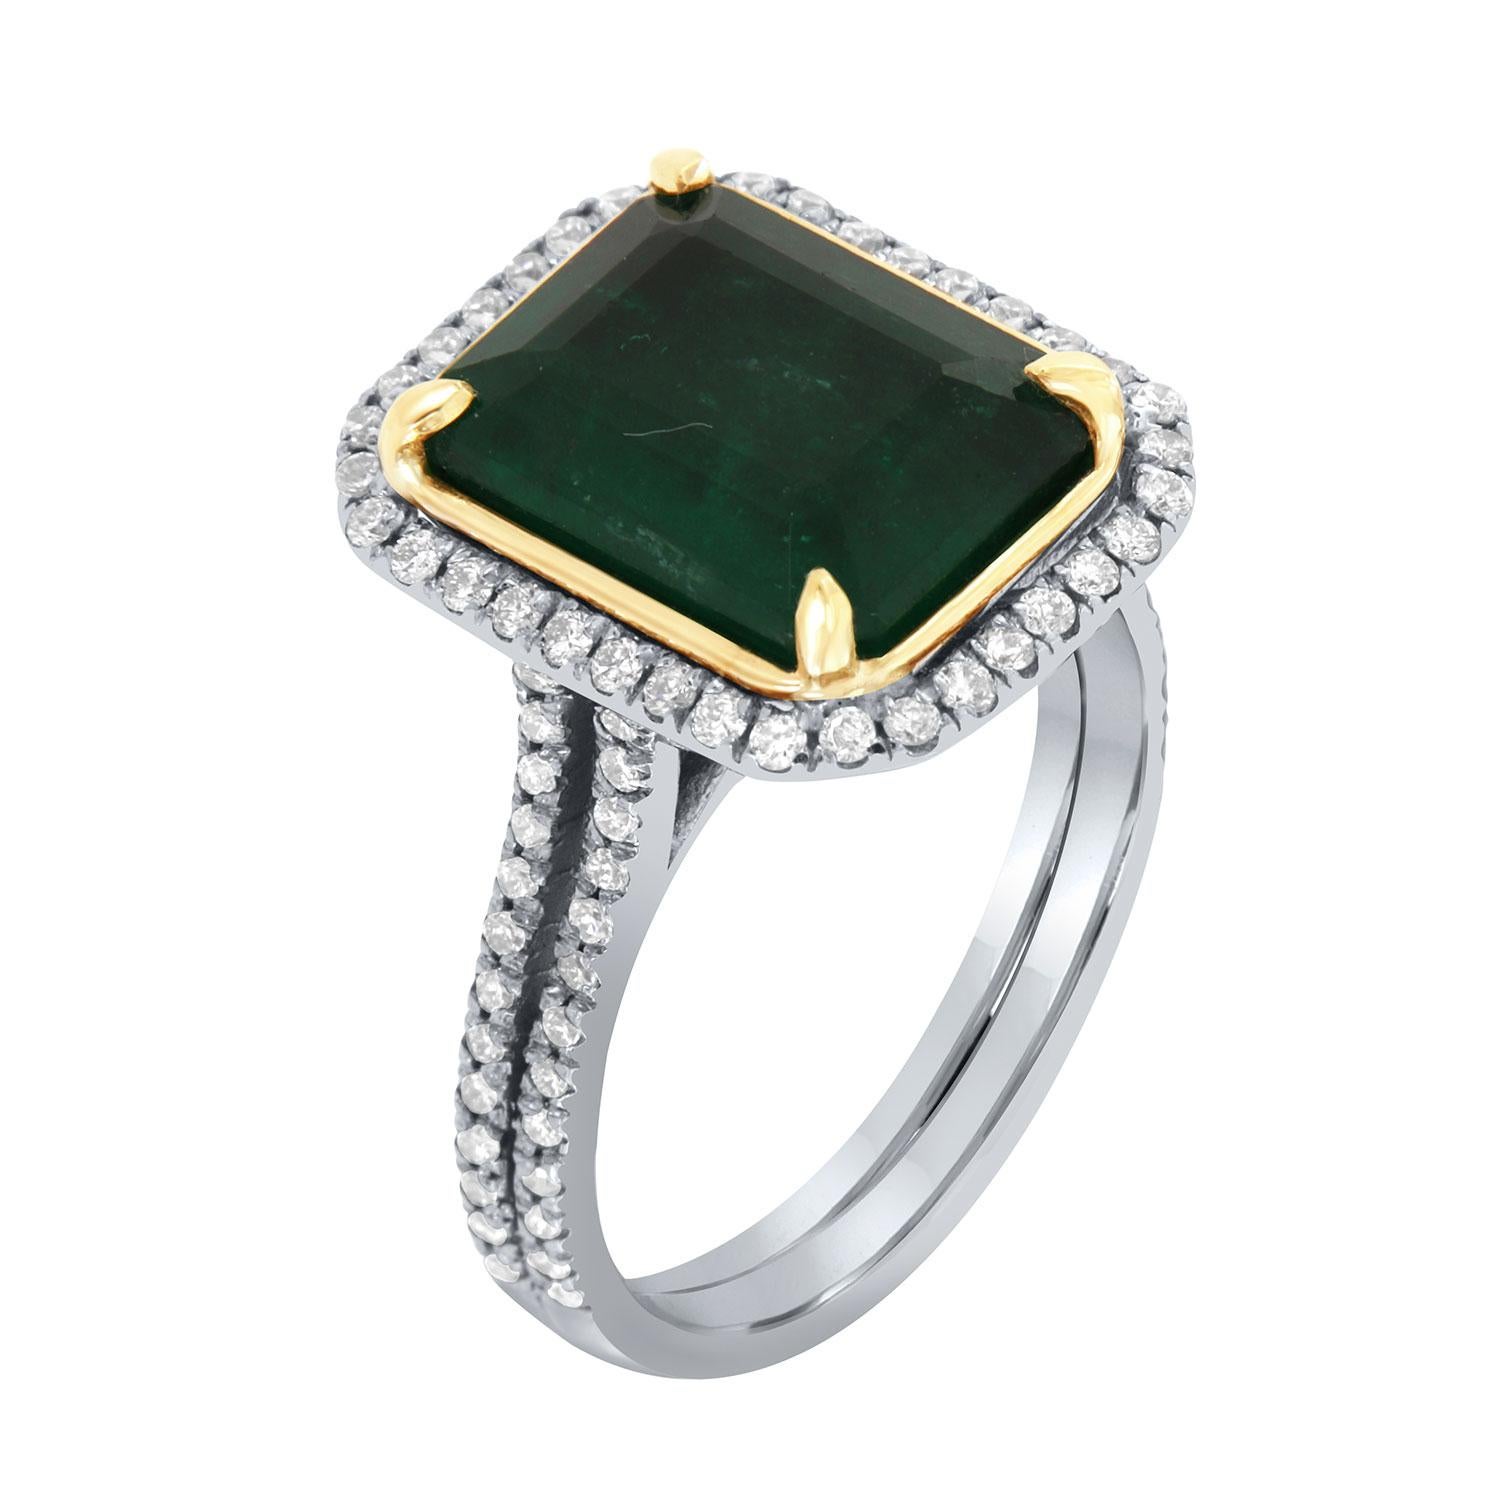 Dieser Ring aus 14-karätigem Weiß- und Gelbgold enthält einen natürlichen grünen Smaragd aus Sambia mit einem Gewicht von 4,75 Karat. Er wird von einem Halo aus runden Brillanten auf einem 3,00 mm breiten Band mit geteiltem Schaft umrahmt. Die